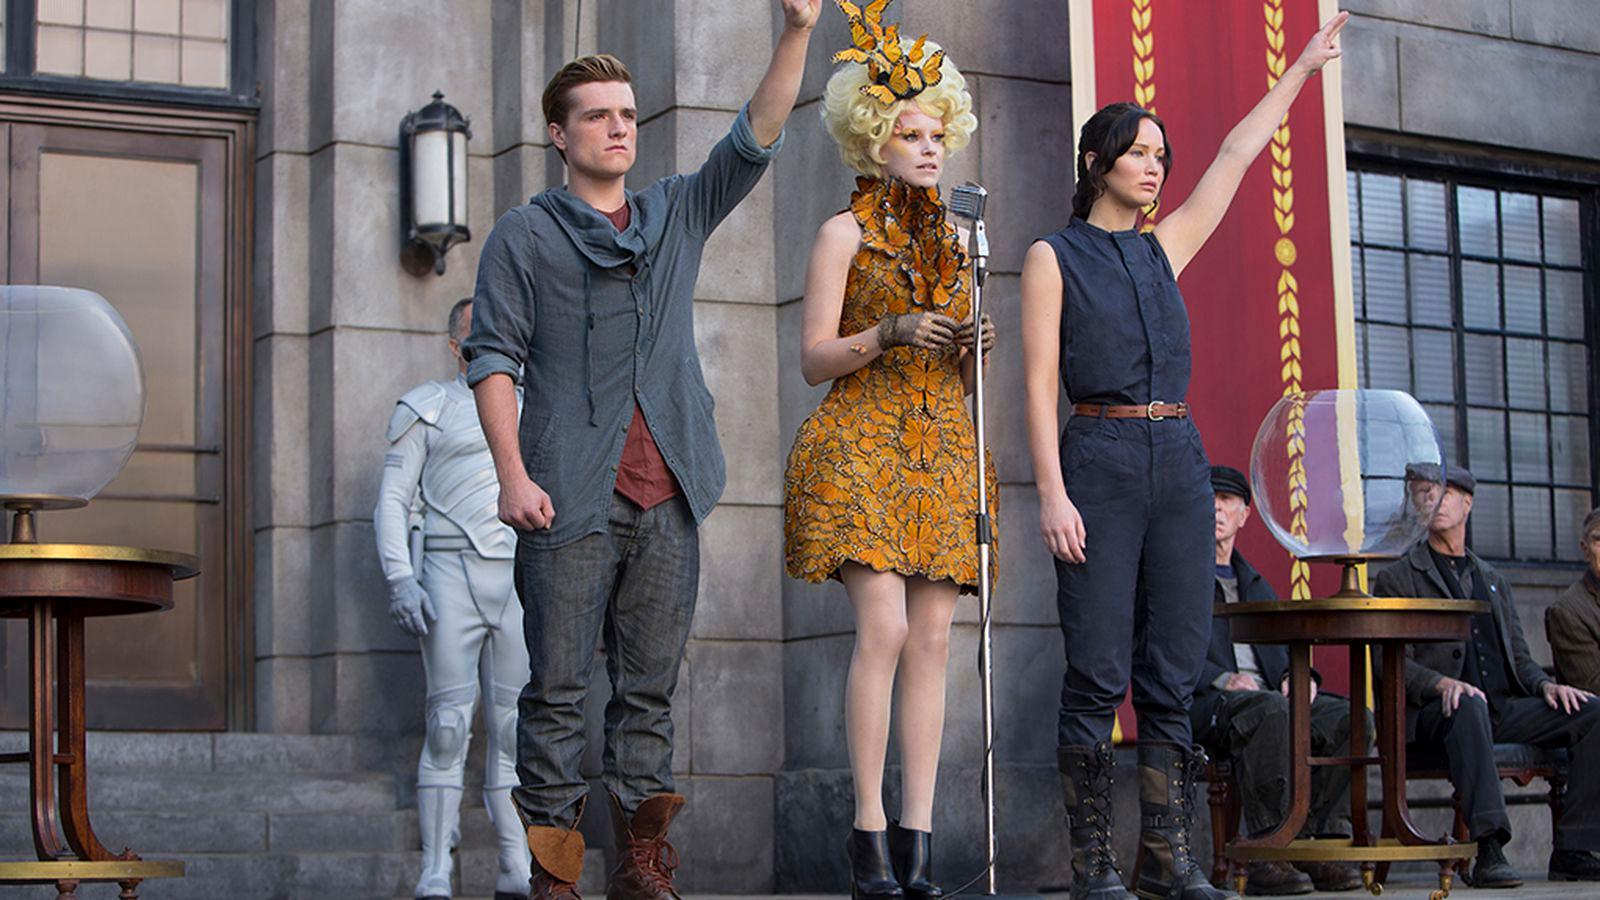 Hunger Games 2 still